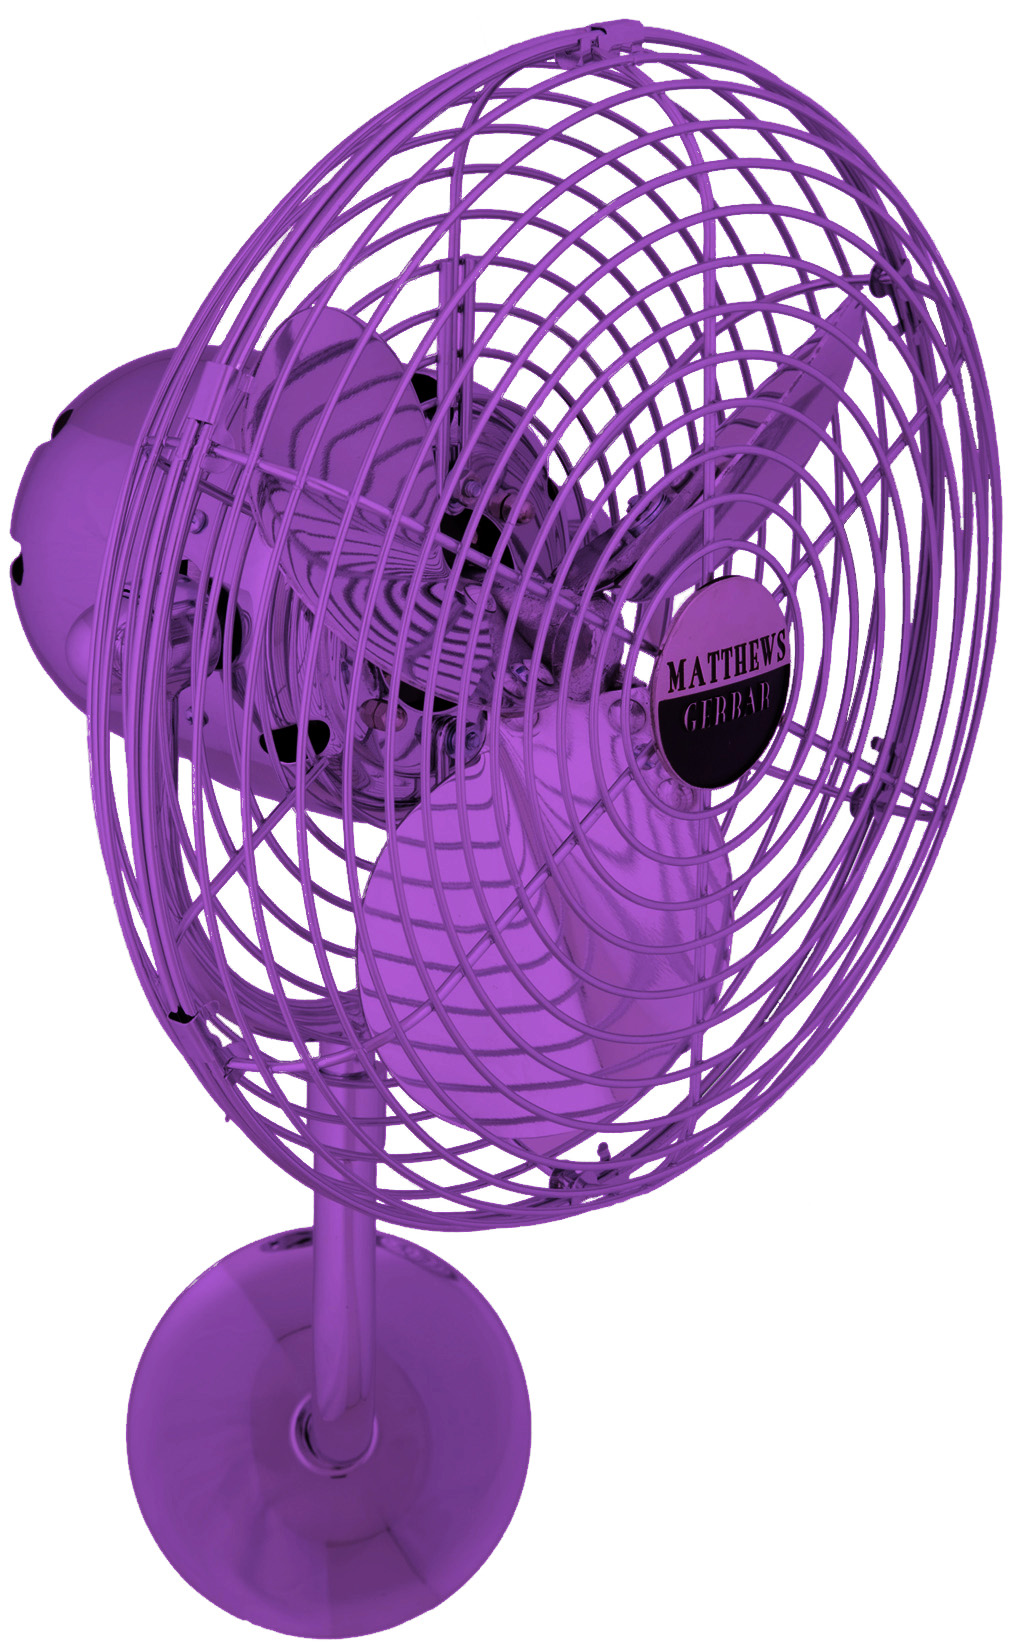 Michelle Parede Wall Fan in Ametista / Light Purple Made by Matthews Fan Company